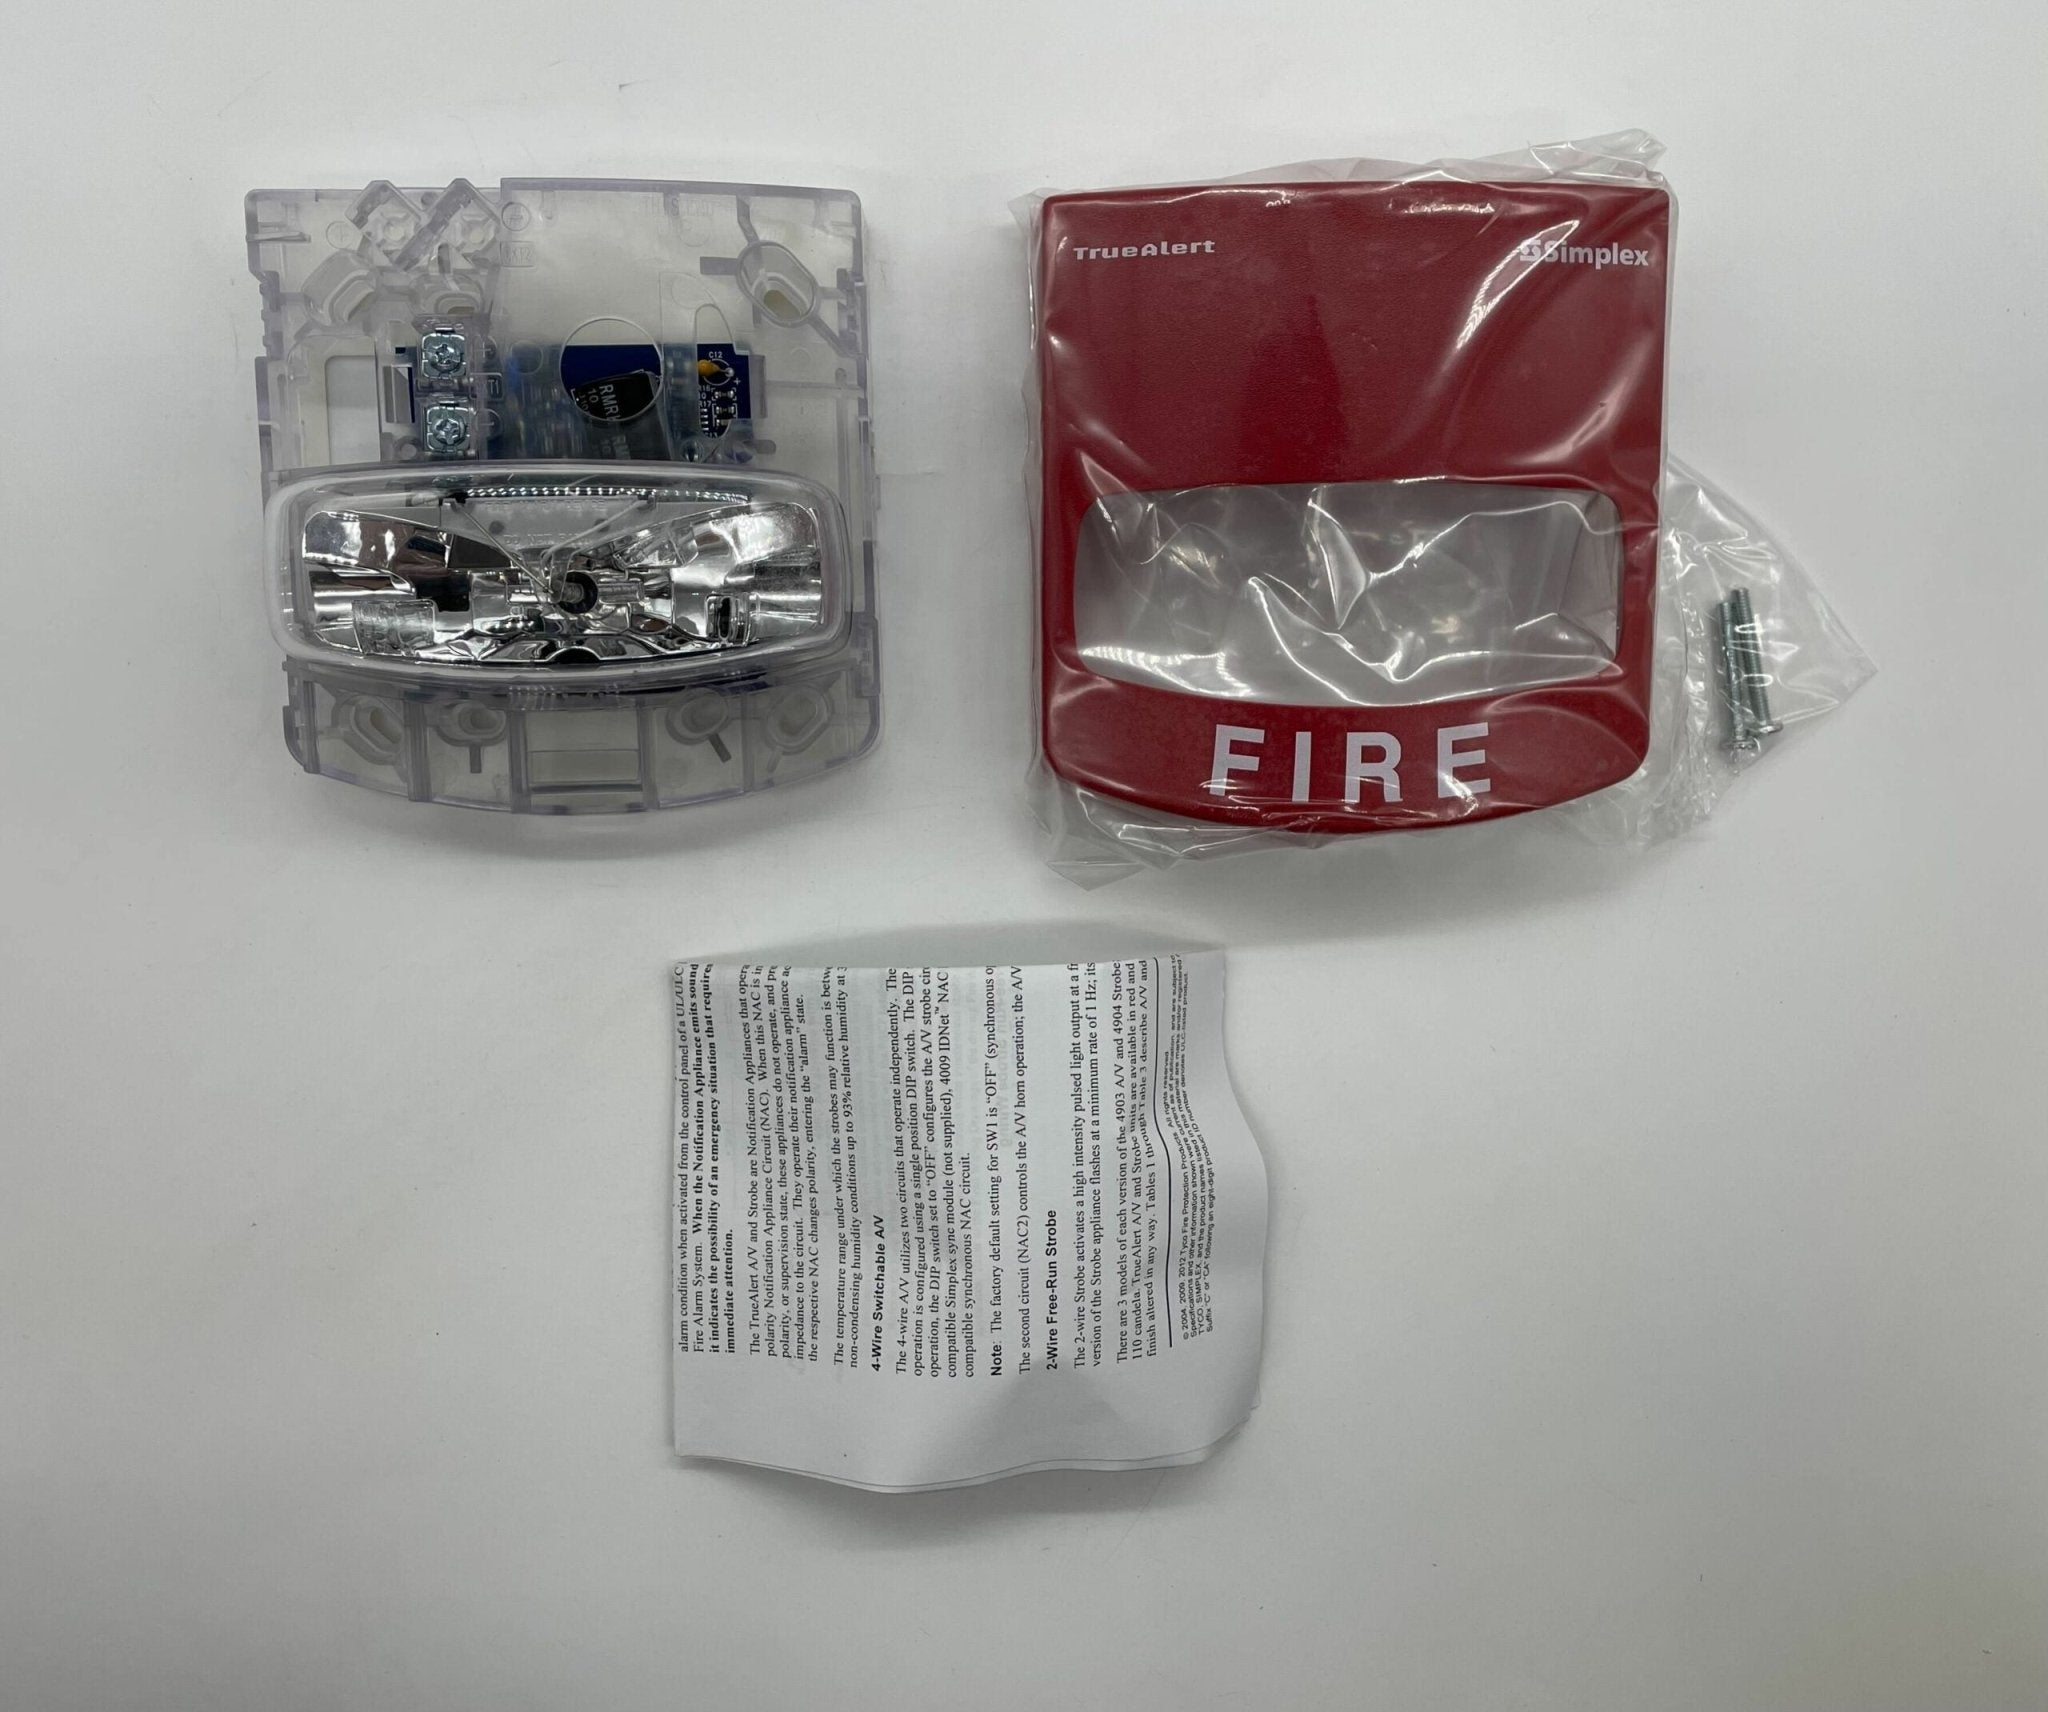 Simplex 4904-9169 Red Non-Addressable Strobe - The Fire Alarm Supplier